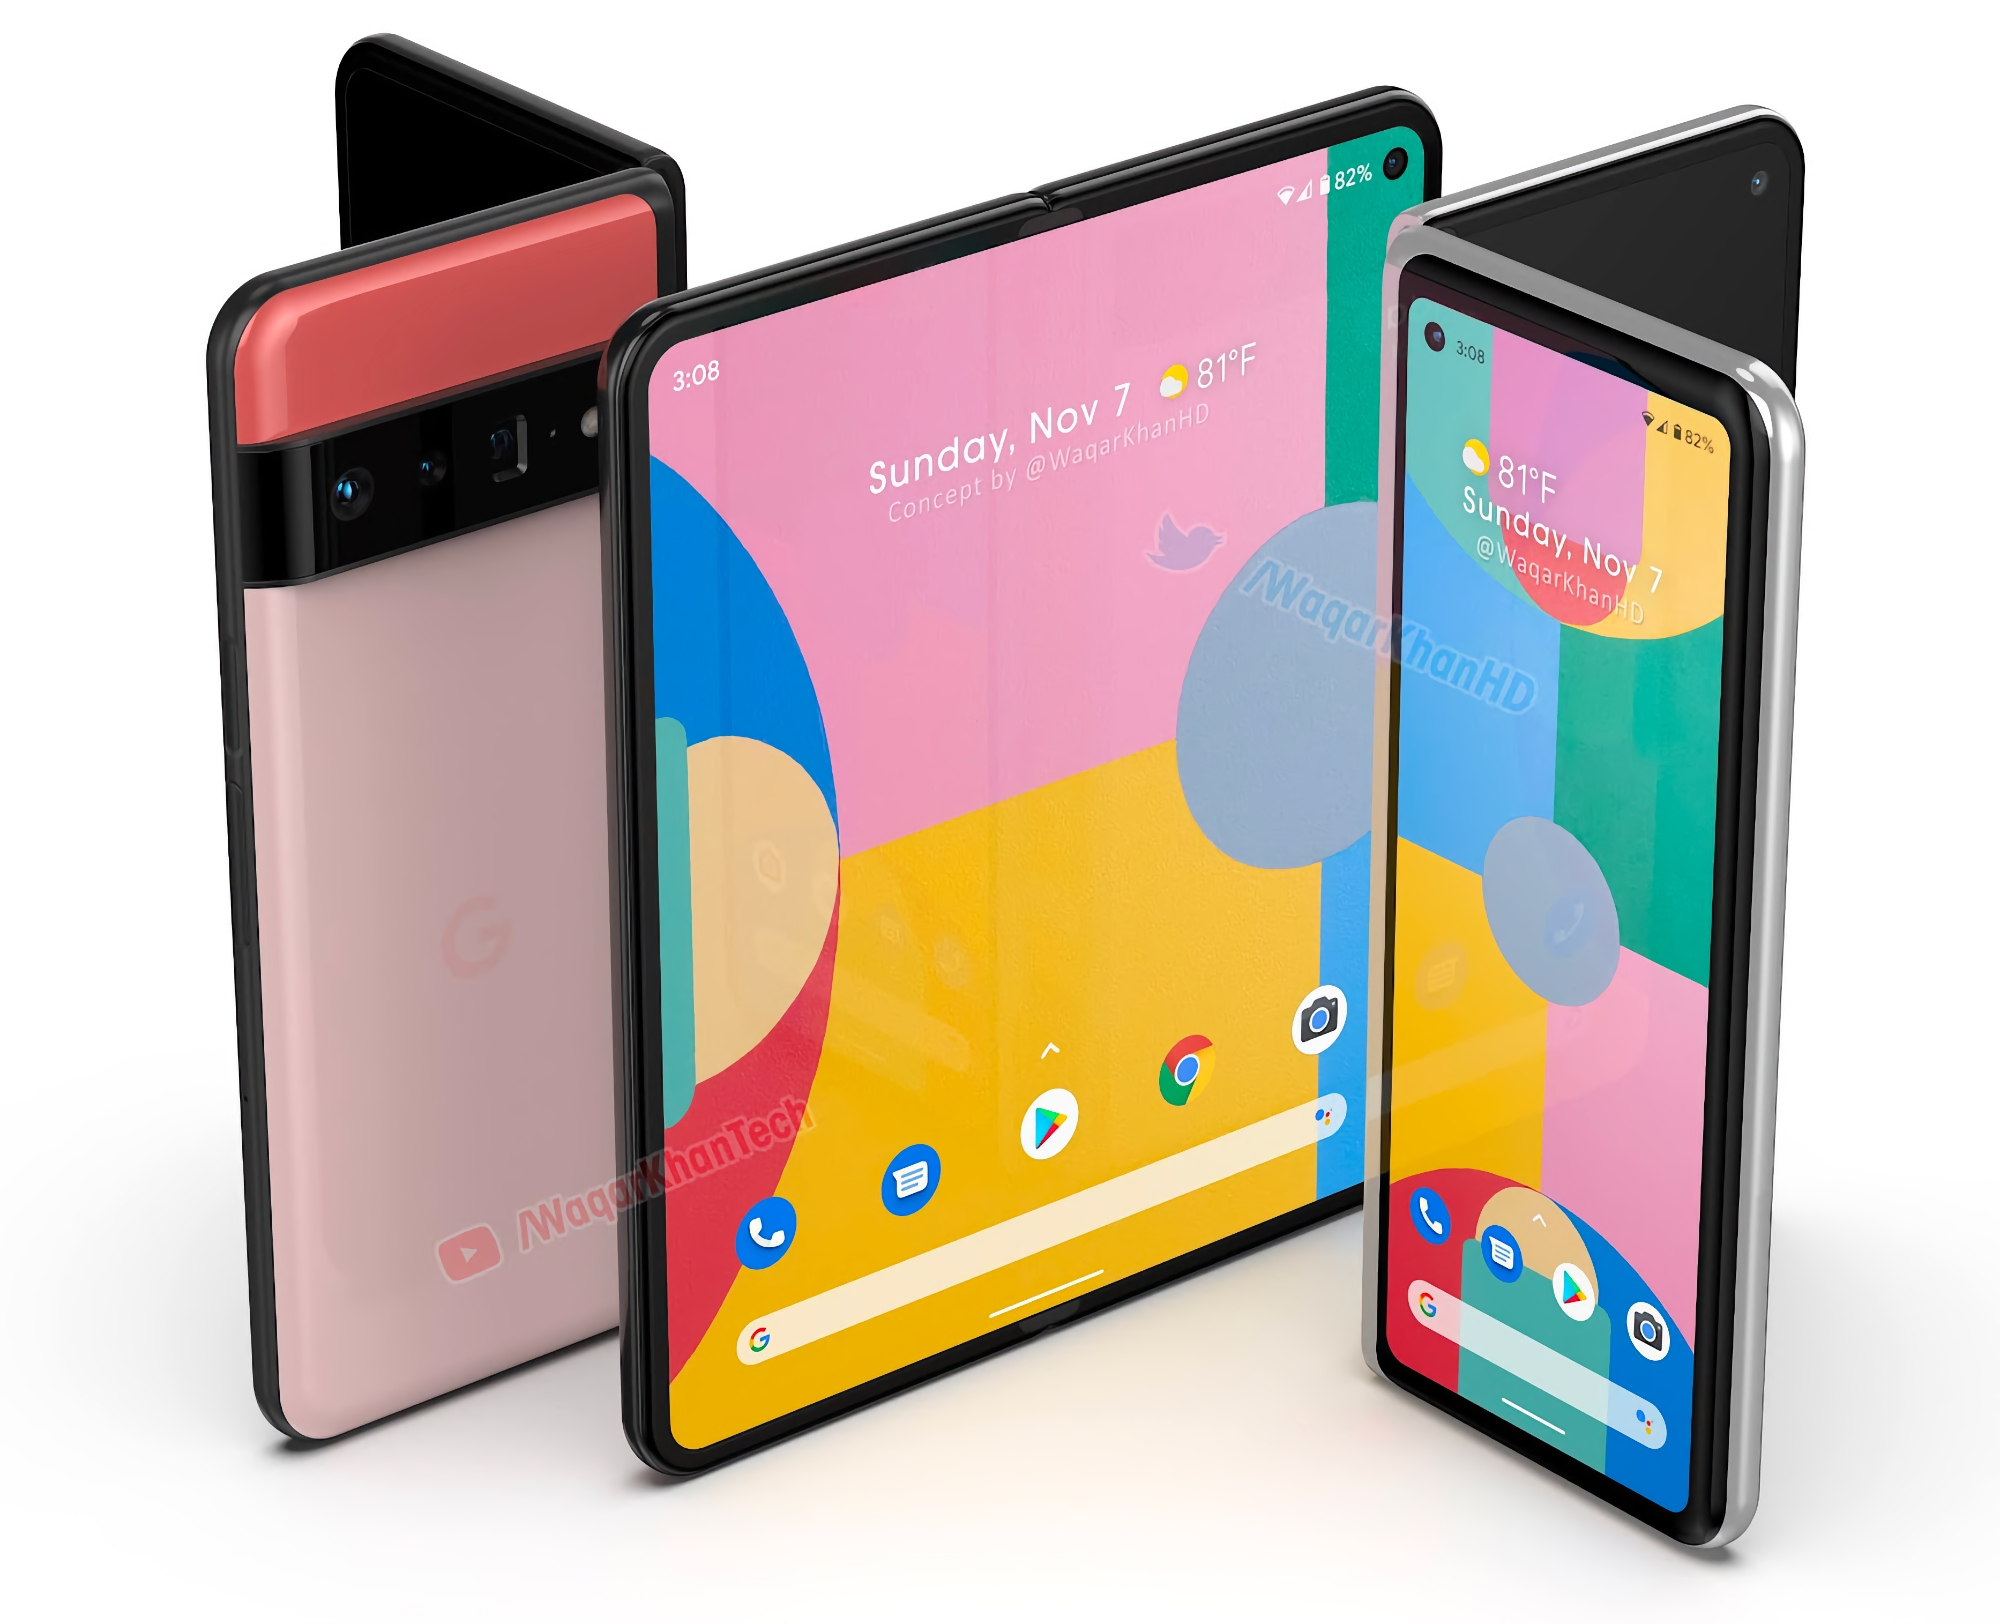 Source : Le smartphone pliable Google Pixel arrivera sur le marché fin 2022